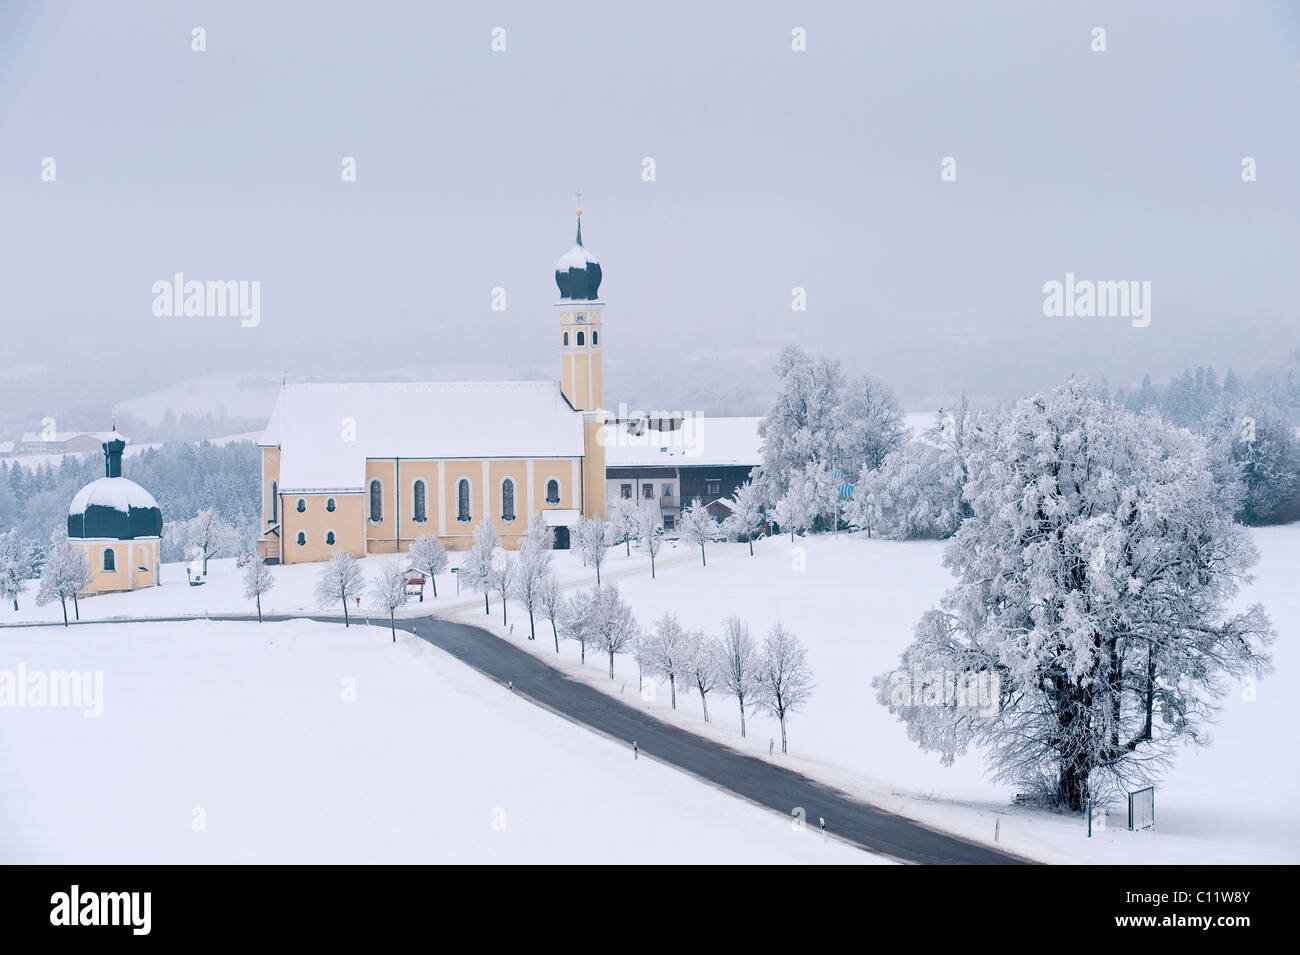 Kirche von Wilparting in eine Winterlandschaft, Winterwonderland mit Raureif auf Mt. Irschenberg, Bayern, Deutschland, Europa Stockfoto